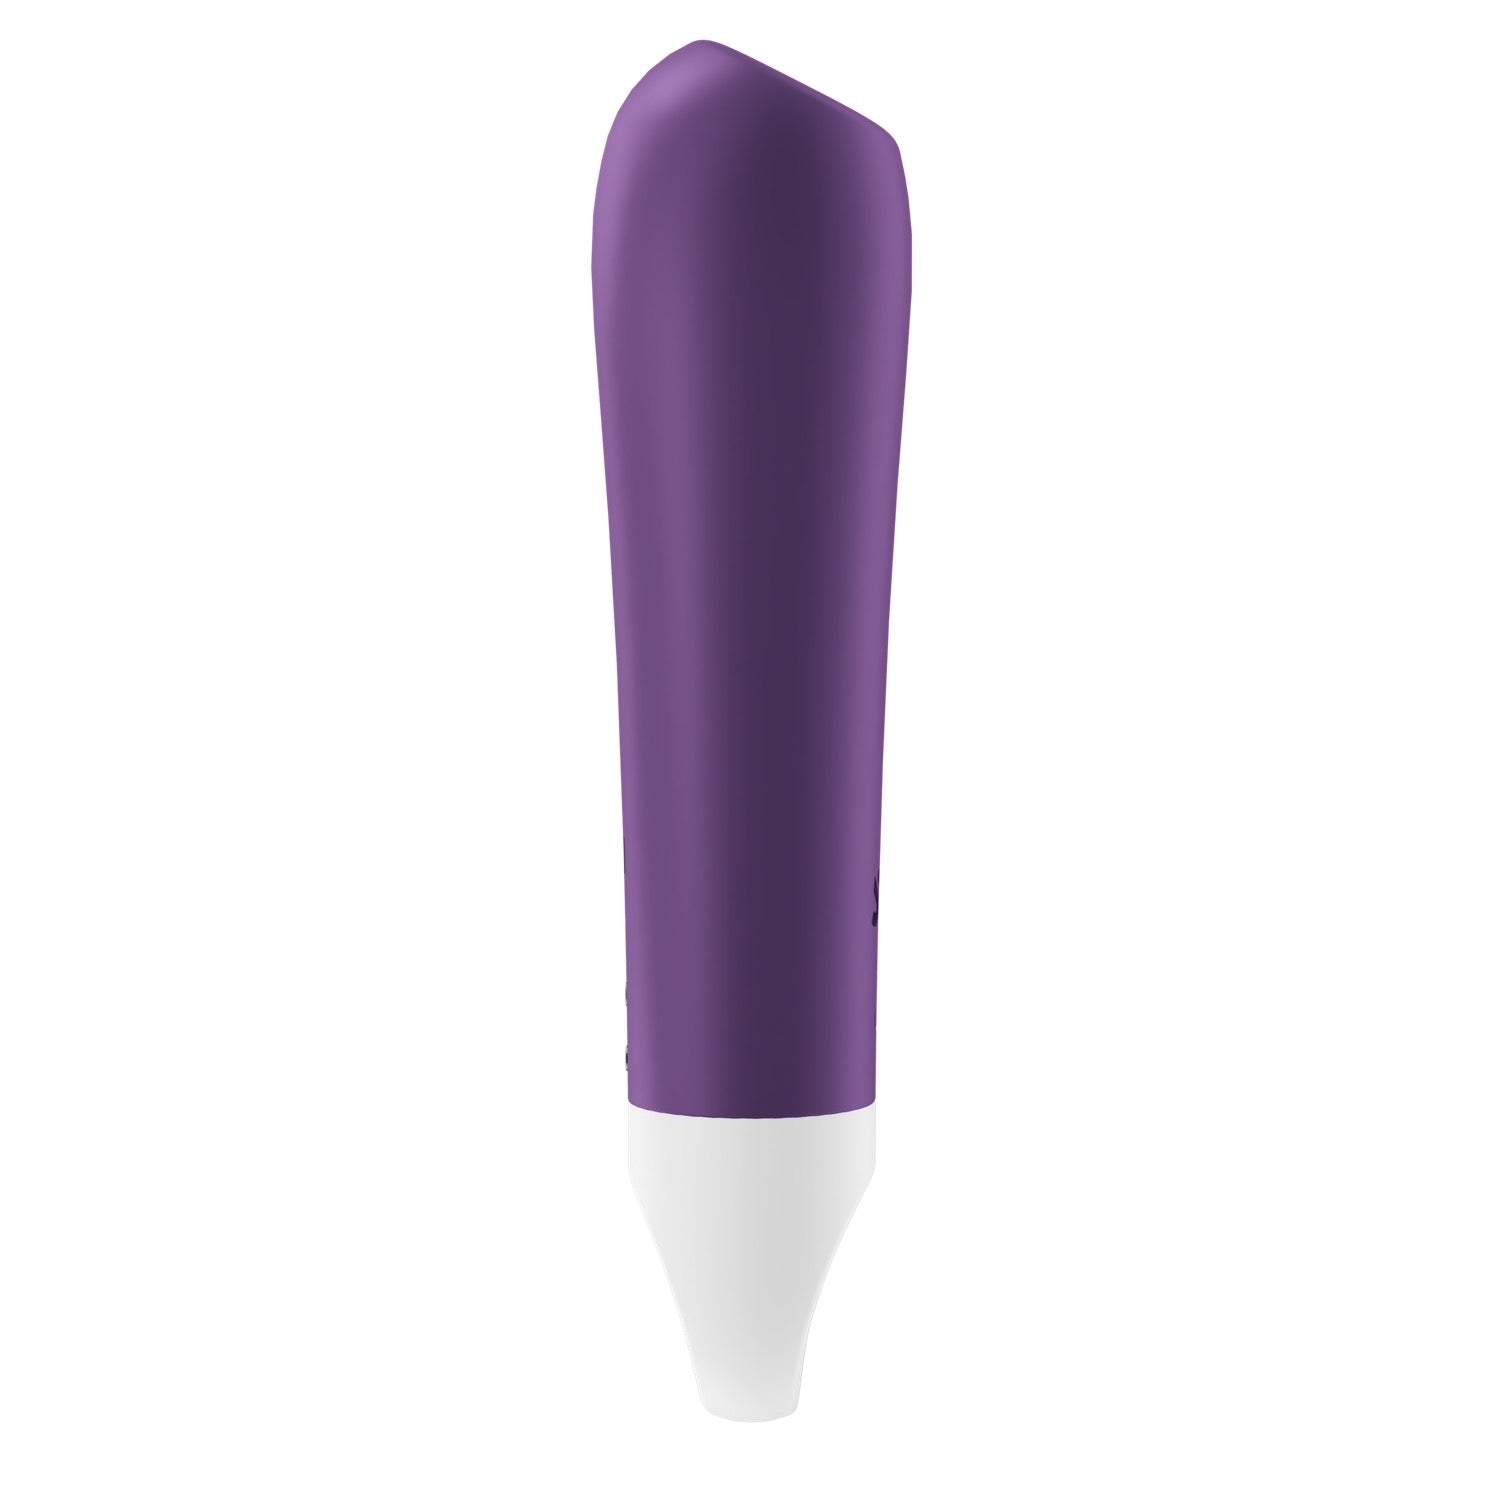 Satisfyer Ultra Power Bullet 2 - Purple by Satisfyer